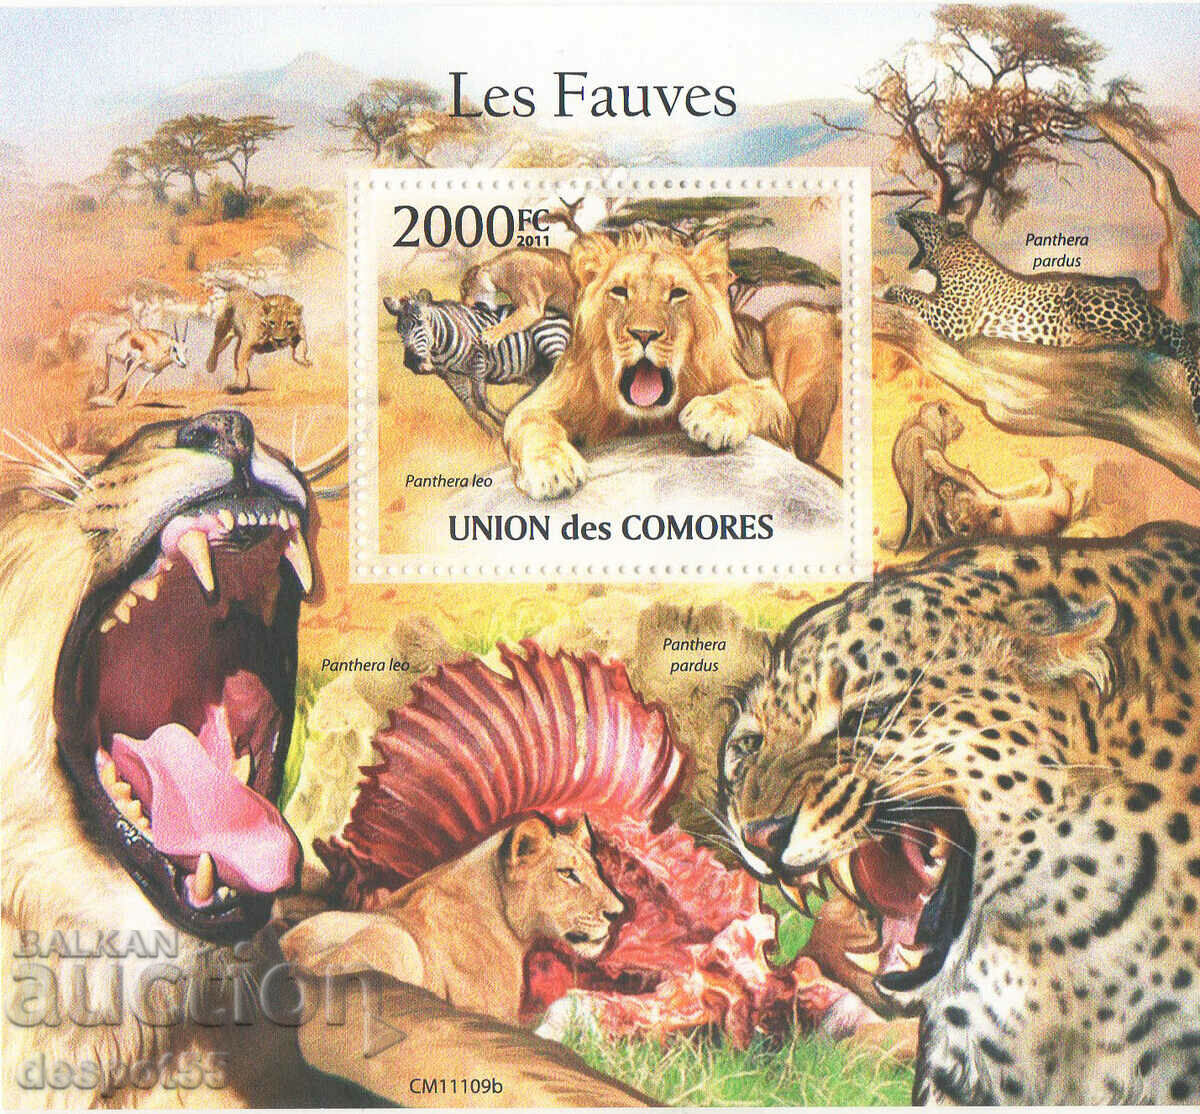 2011. Comoros. Mammals - Big cats. Block.